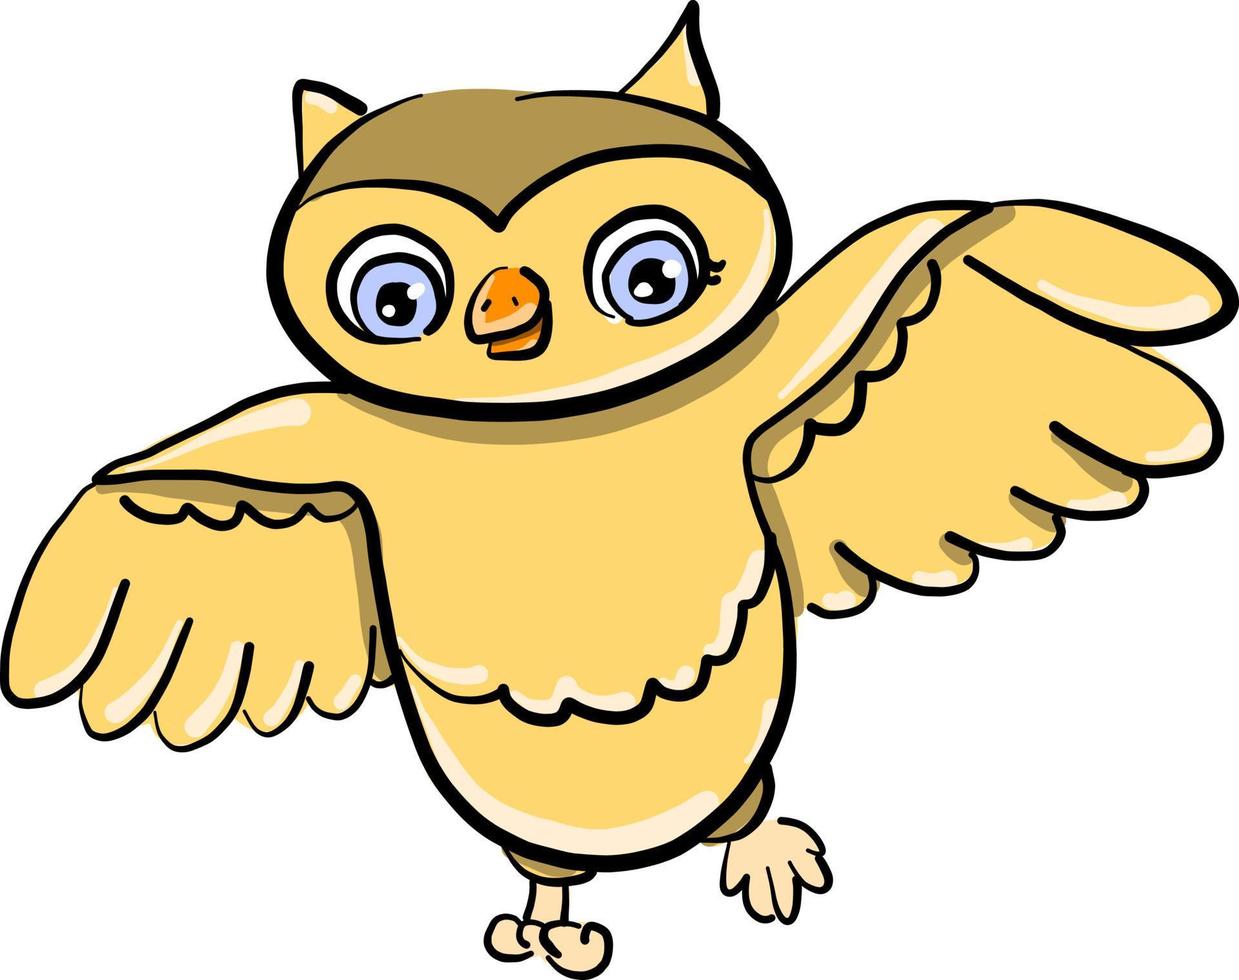 Flying owl, illustration, vector on white background